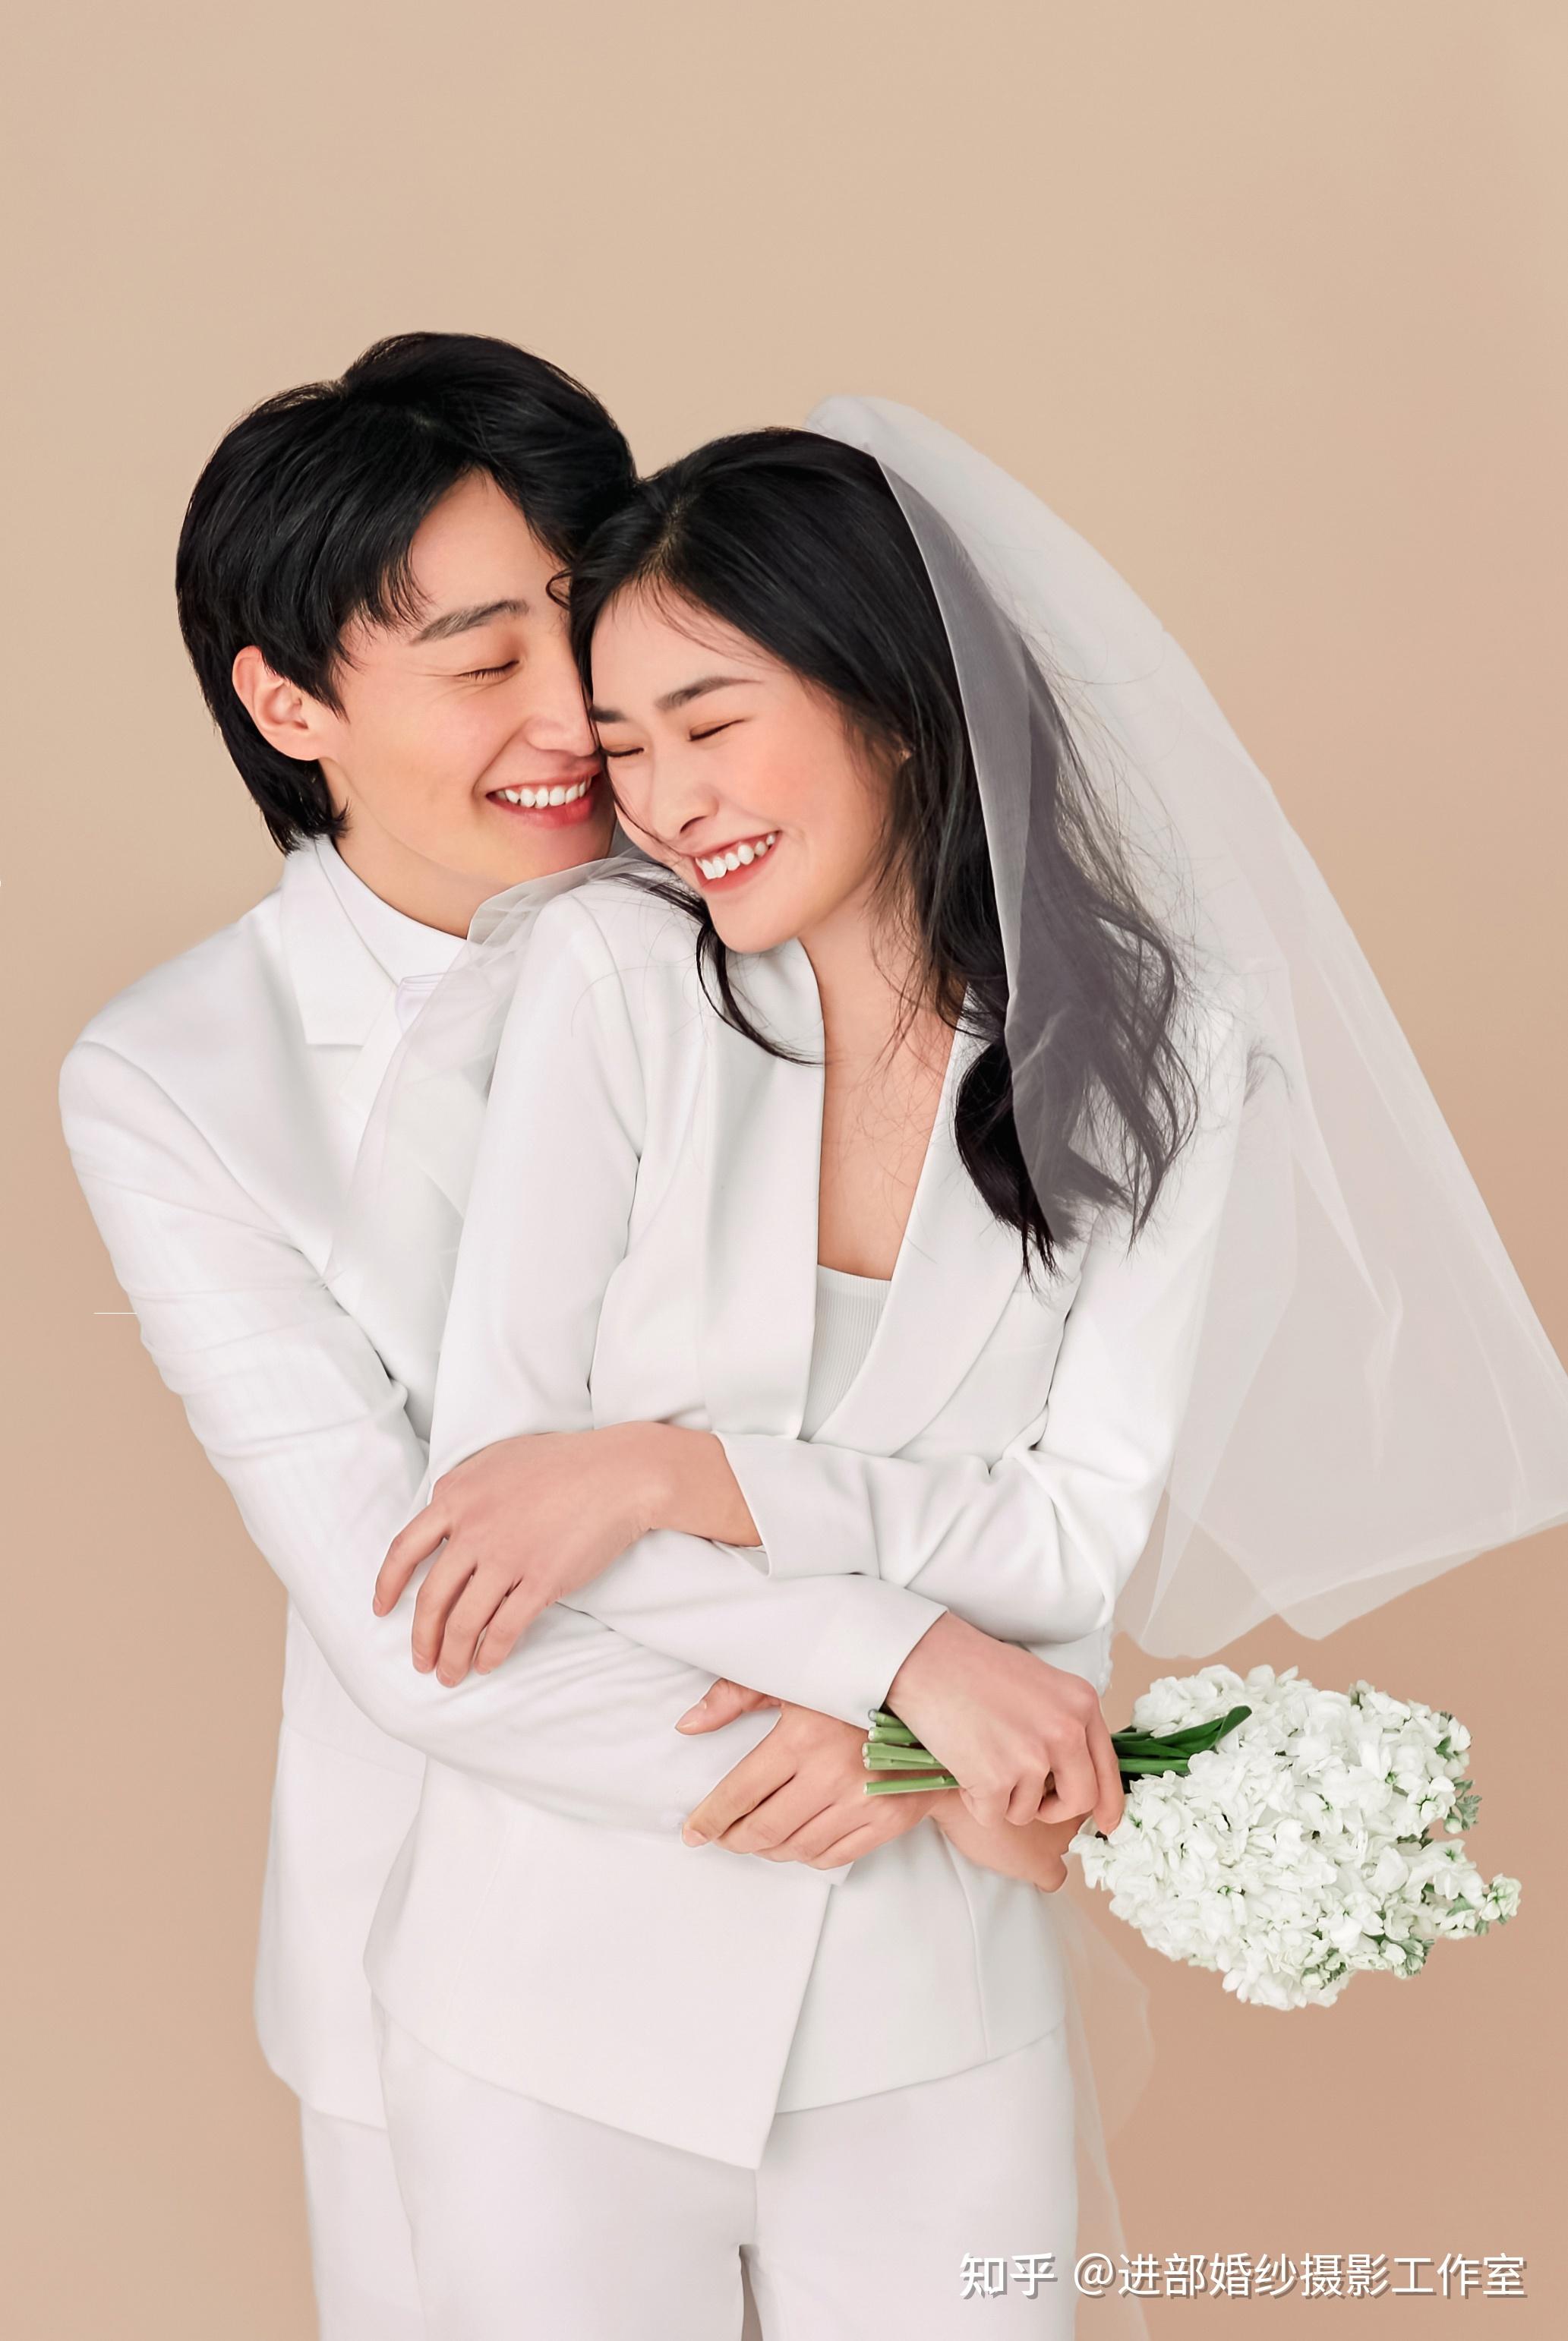 90后必收藏的韩系婚纱照,2021年婚纱照风格就选它!71